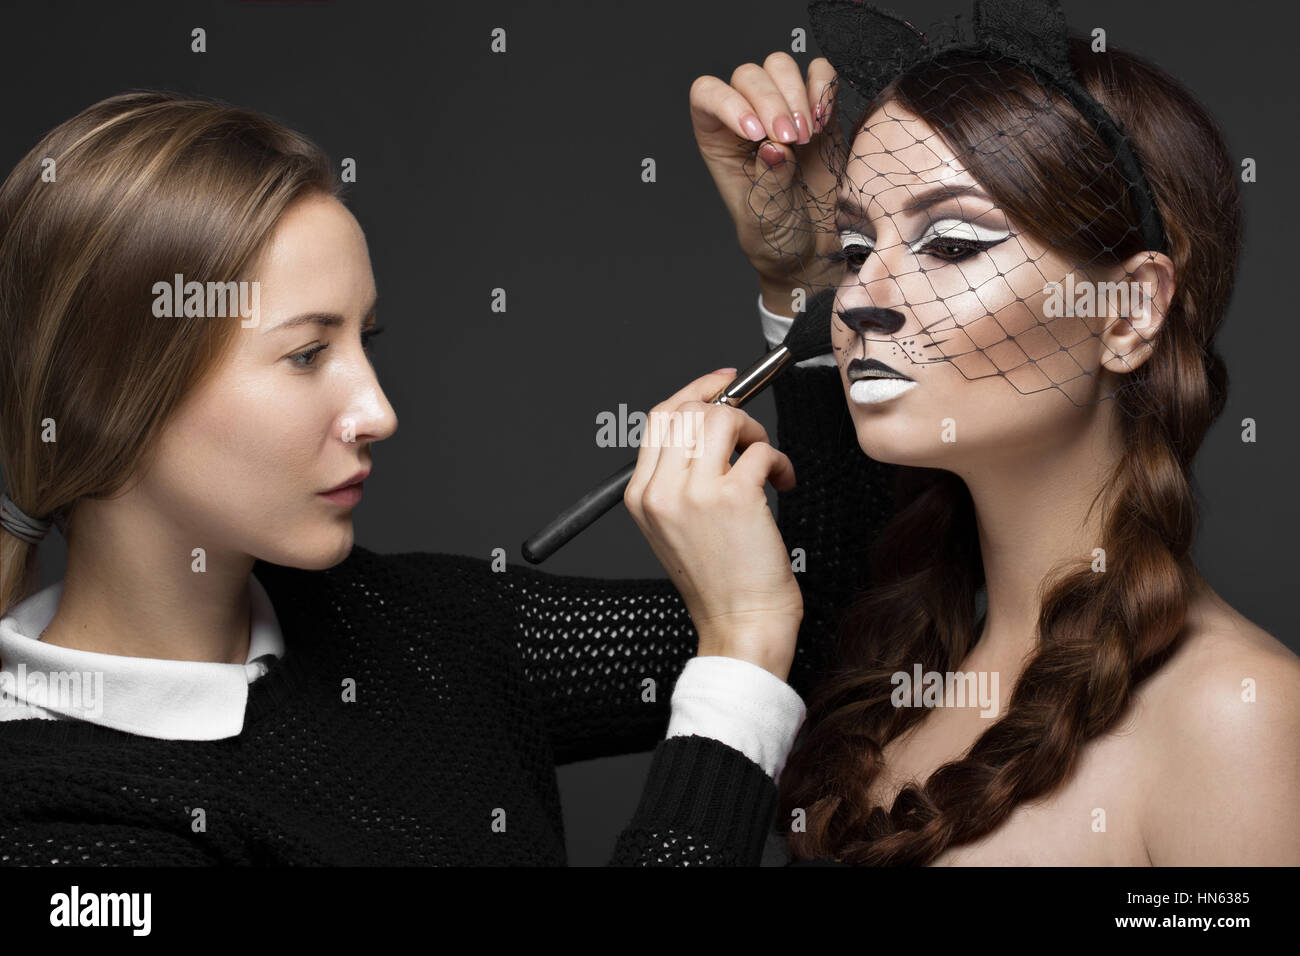 Zwei schöne Mädchen auf Foto schießen Gesicht Make-up auftragen. Schönheit Mode-Modell. Stockfoto